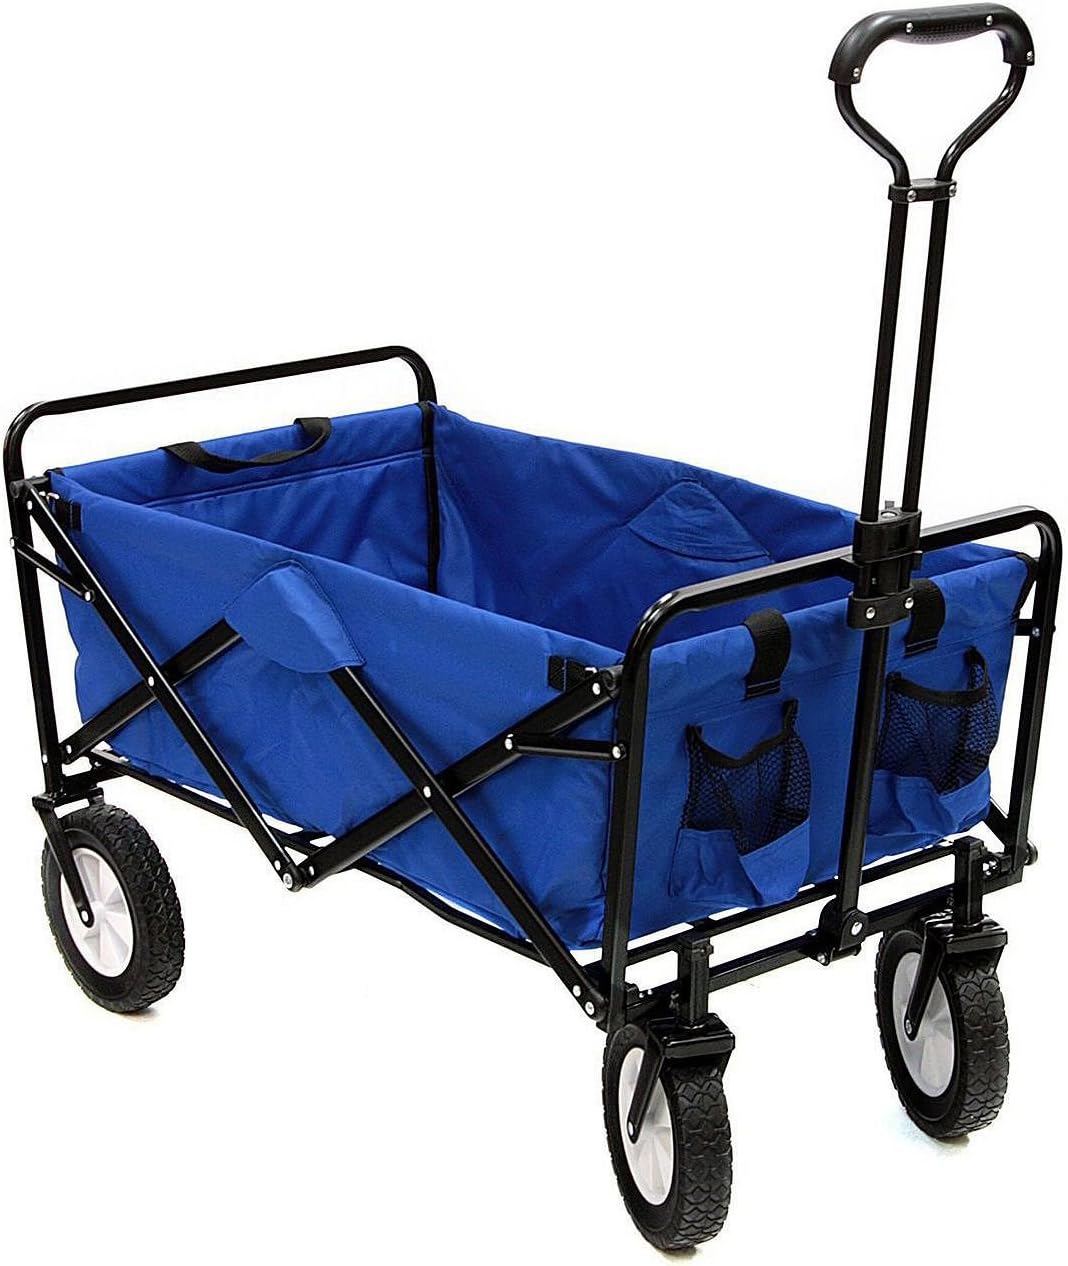 Portable Folding Garden Trolley Cart Heavy Duty Shopping Cart for Outdoor Camping Beach